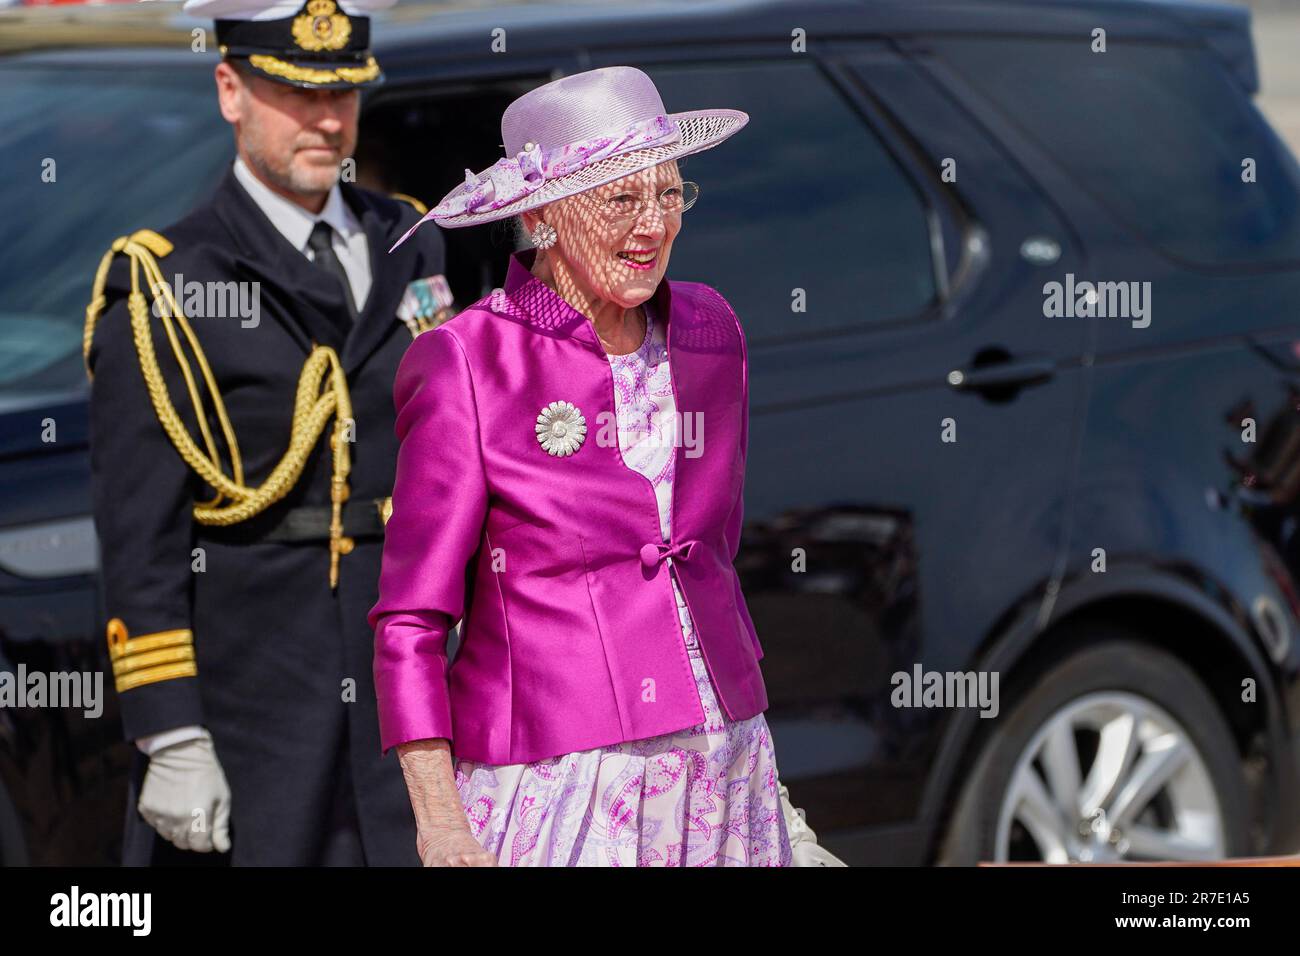 Kopenhagen, Dänemark 20230615. Königin Margrethe von Dänemark auf dem Weg, um das norwegische königliche Paar am Pier im Zusammenhang mit dem offiziellen Besuch in Dänemark am 15. Und 16. Juni zu empfangen. Foto: Lise Aaserud/NTB Stockfoto